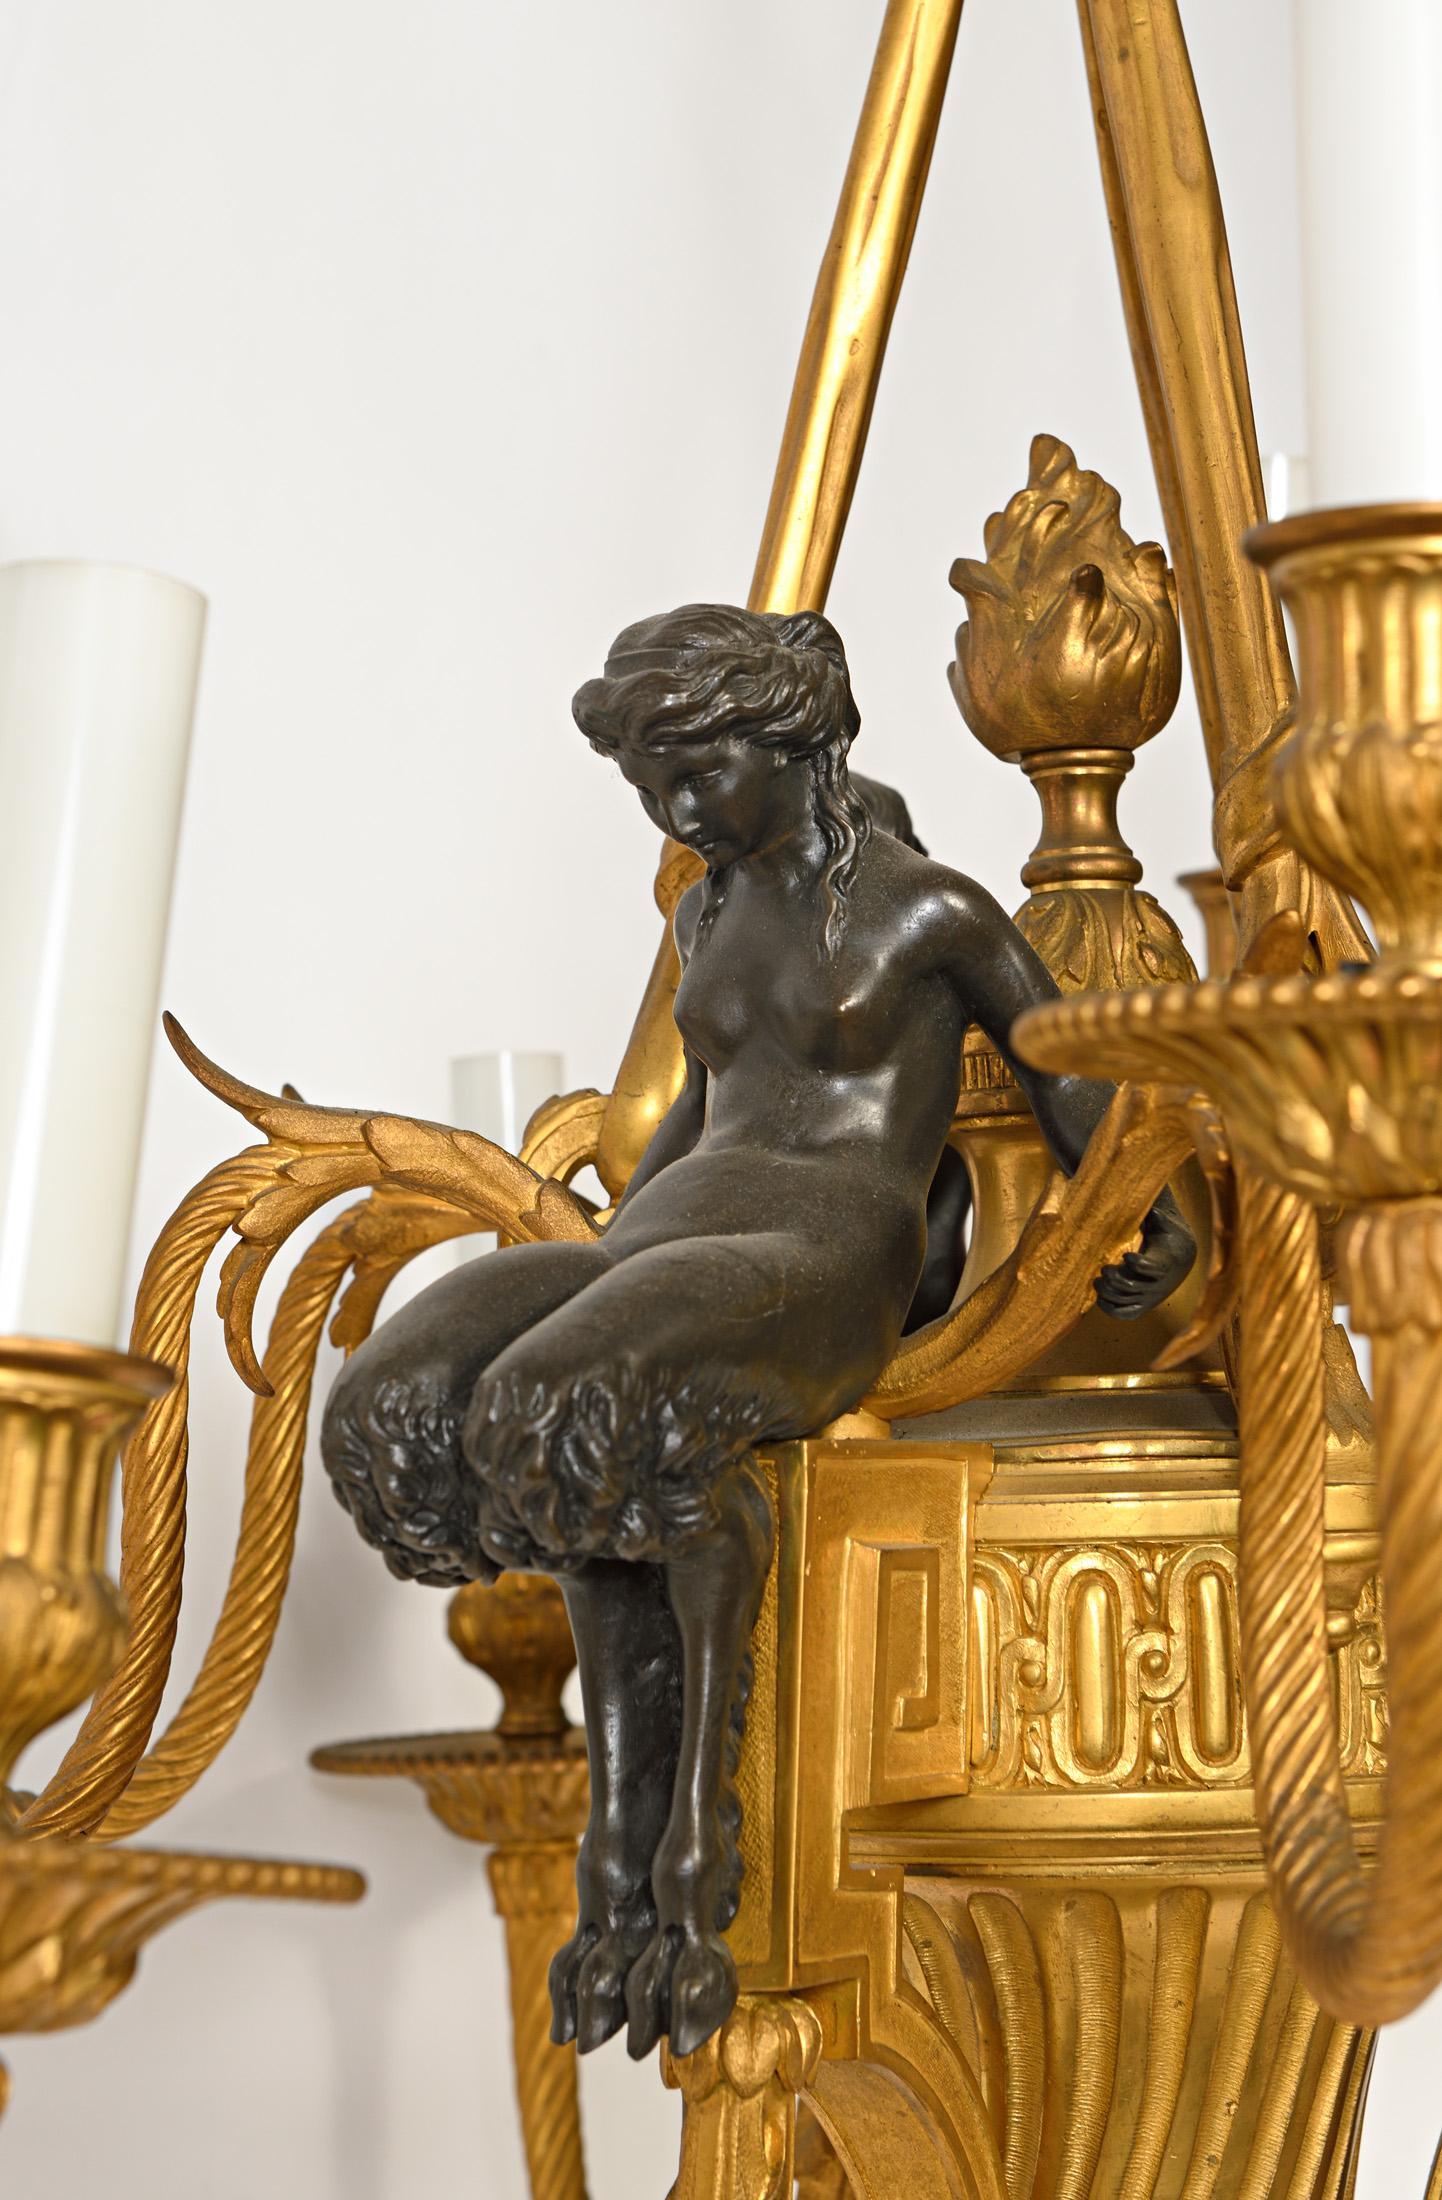 Magnifique lampe à 9 lumières en bronze doré de style Louis XVI, ornée de figures de dames néoclassiques. Ce magnifique lustre en bronze doré a été merveilleusement coulé et ciselé à la main avec du bronze doré bicolore. Chaque belle dame est